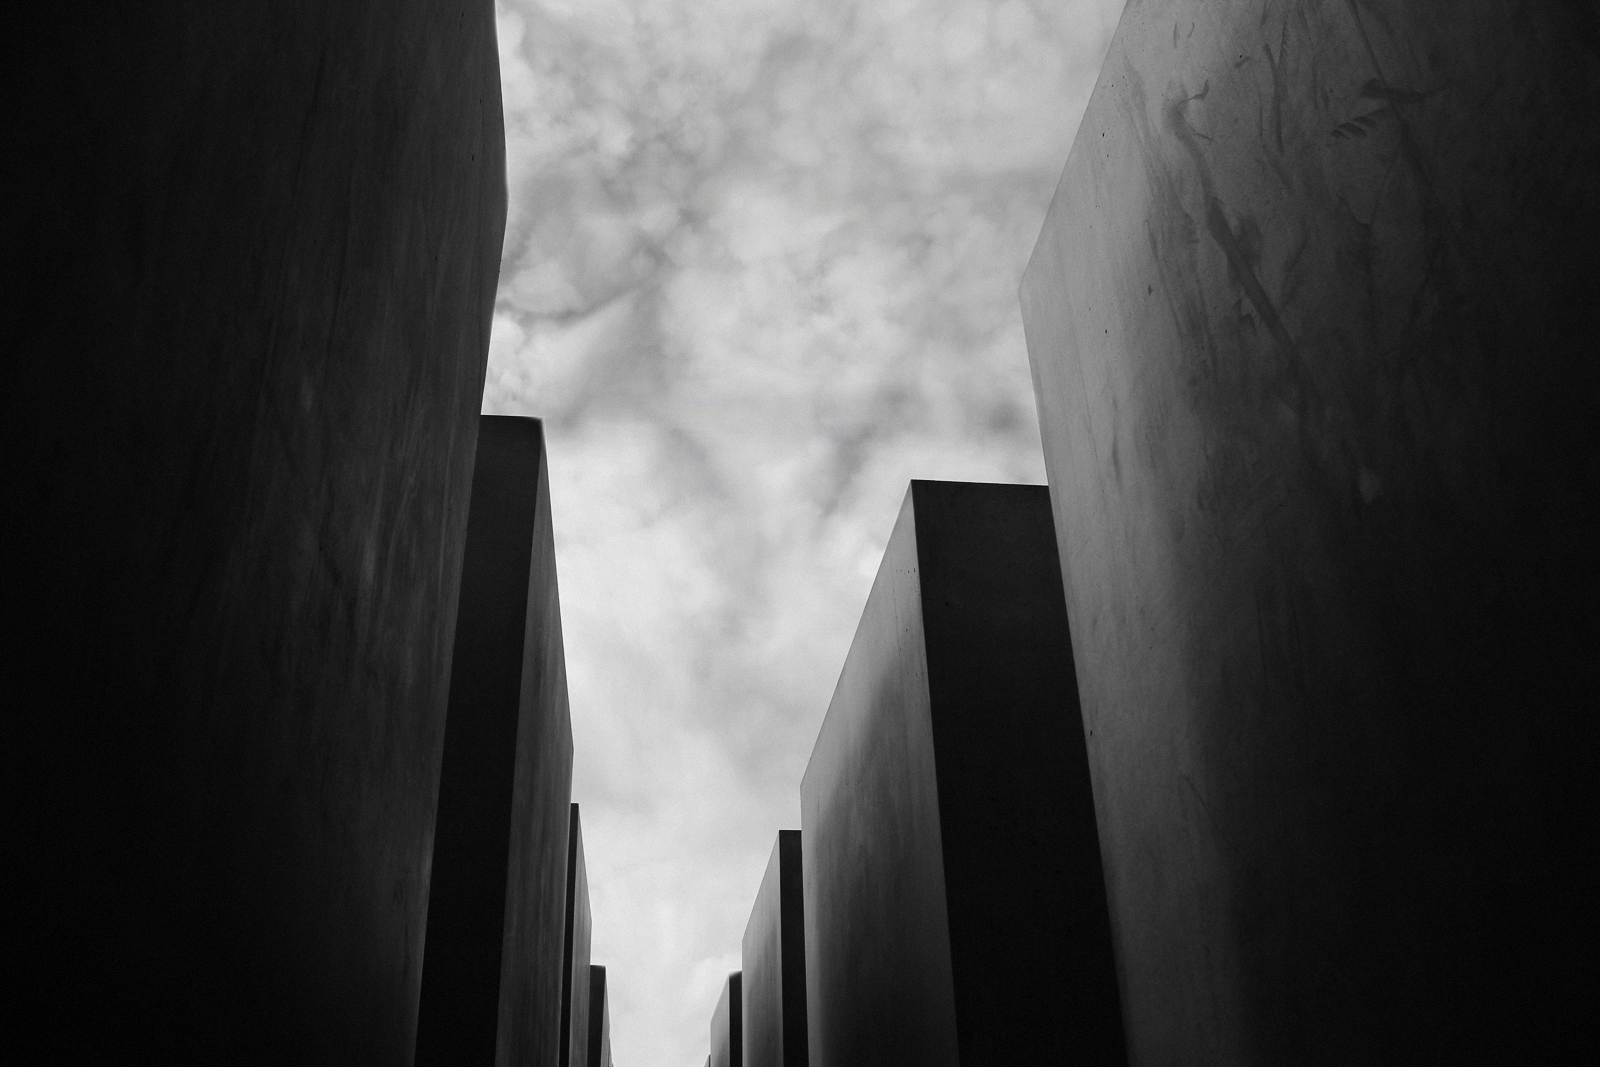 Holocaust Memorial in Berlin 2011